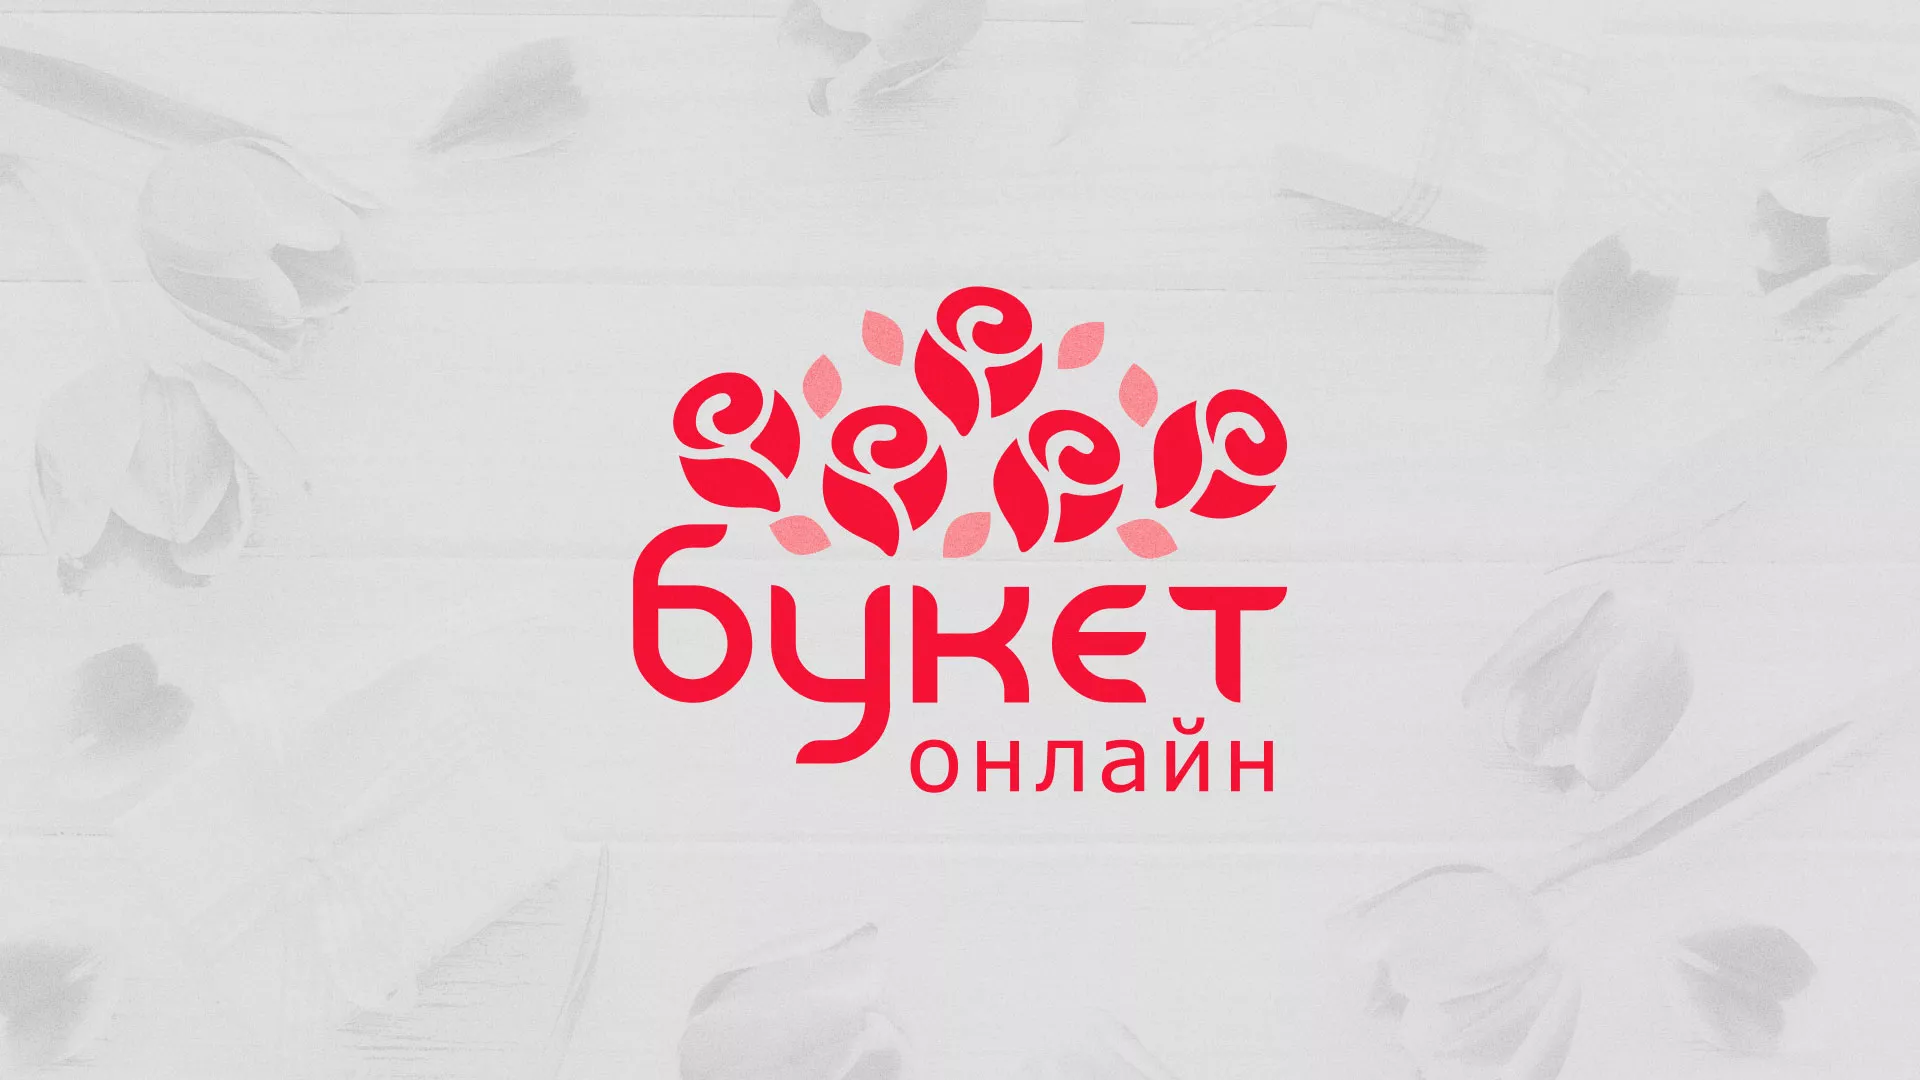 Создание интернет-магазина «Букет-онлайн» по цветам в Верещагино